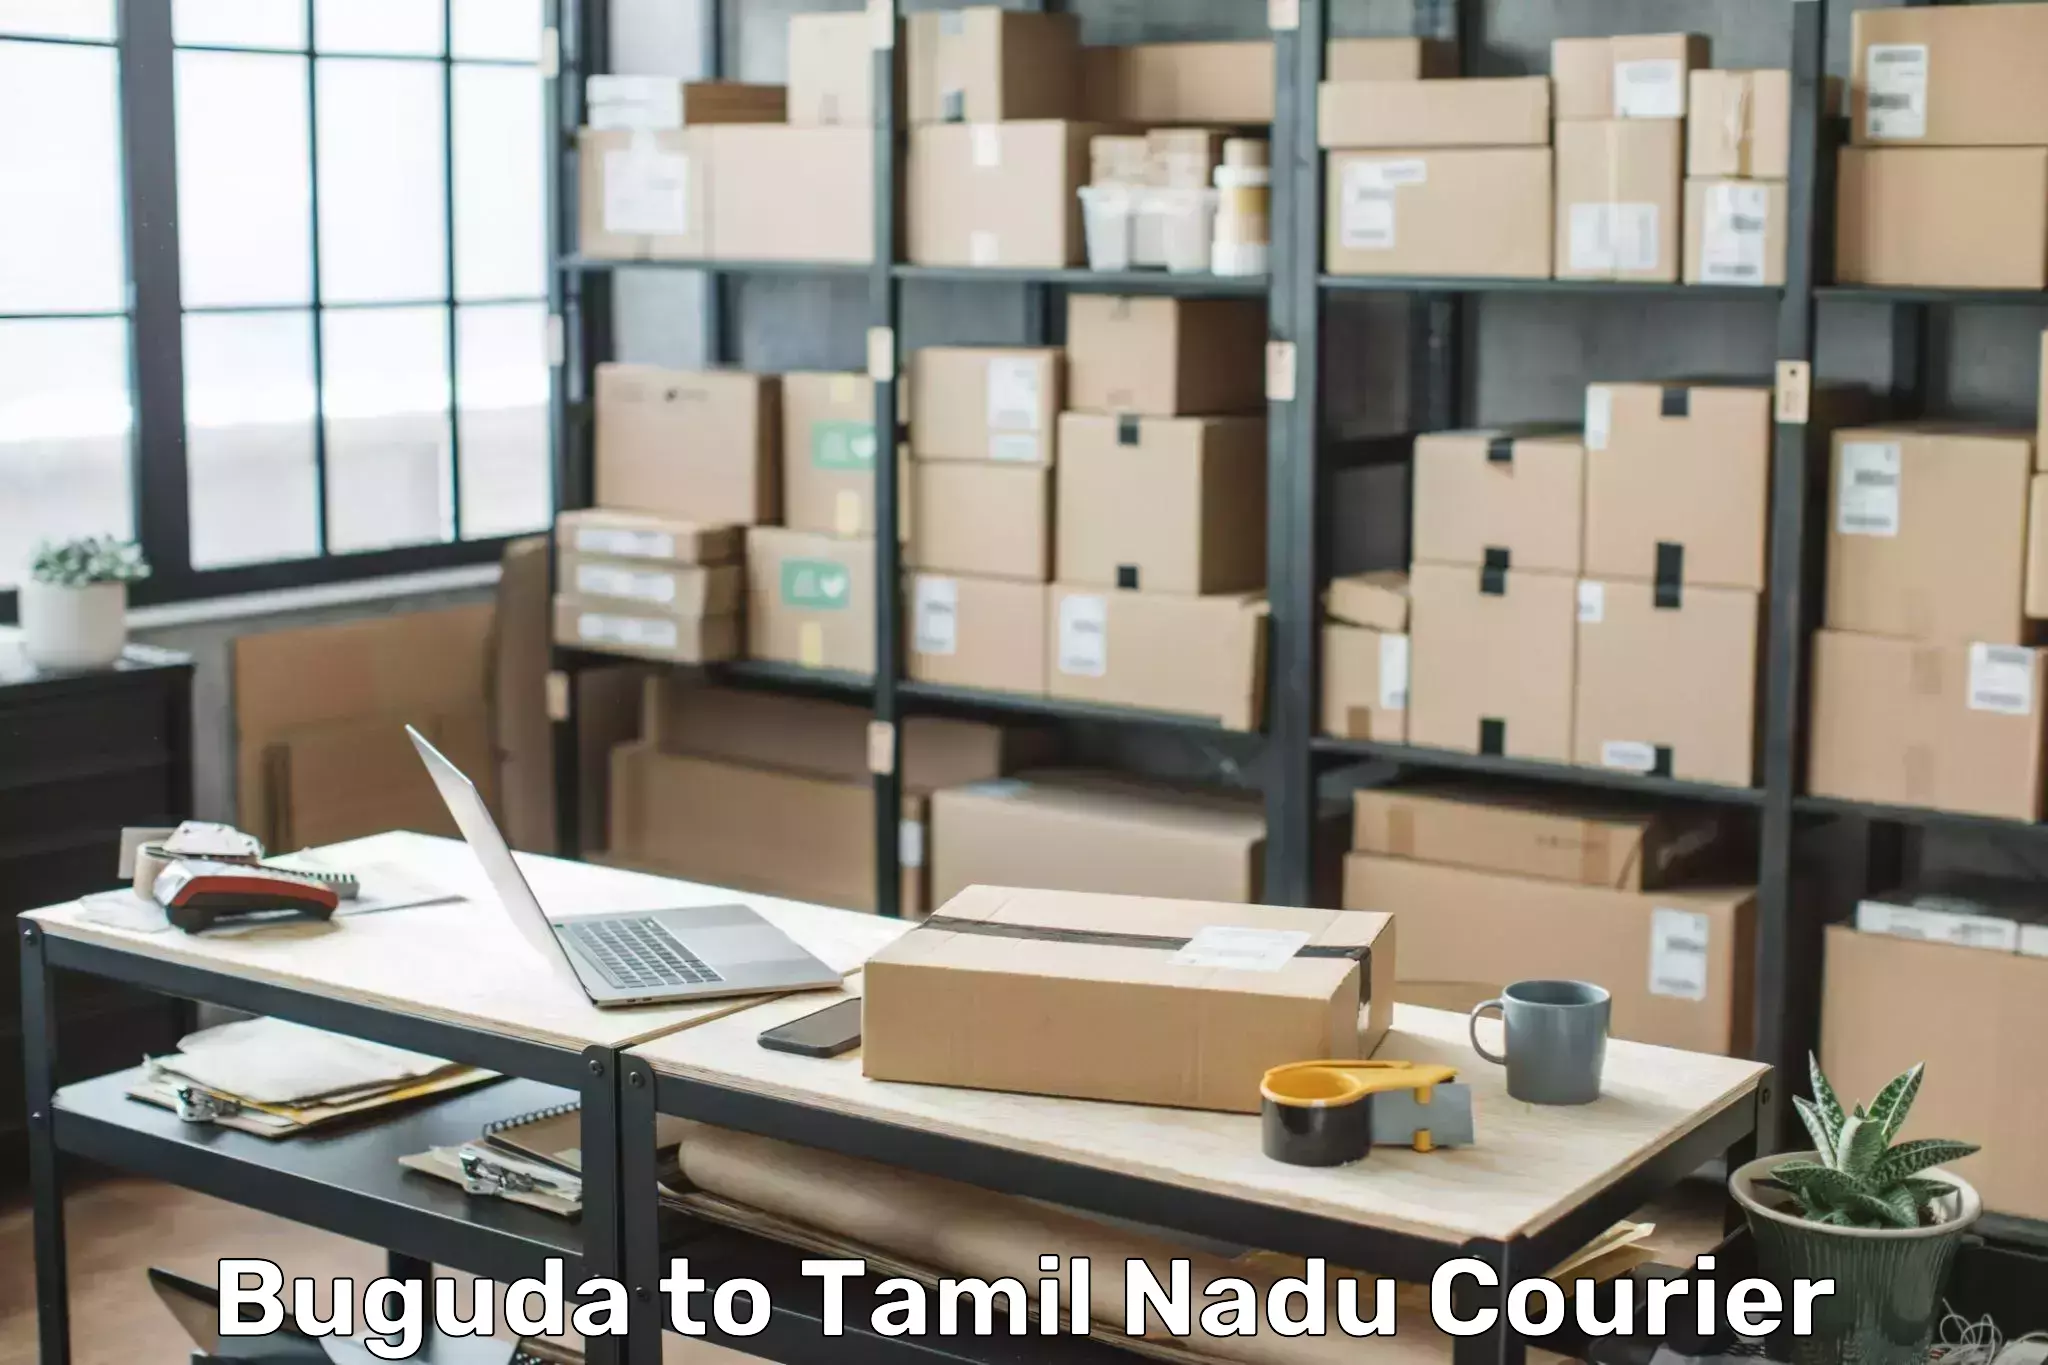 Door-to-door baggage service Buguda to Tamil Nadu